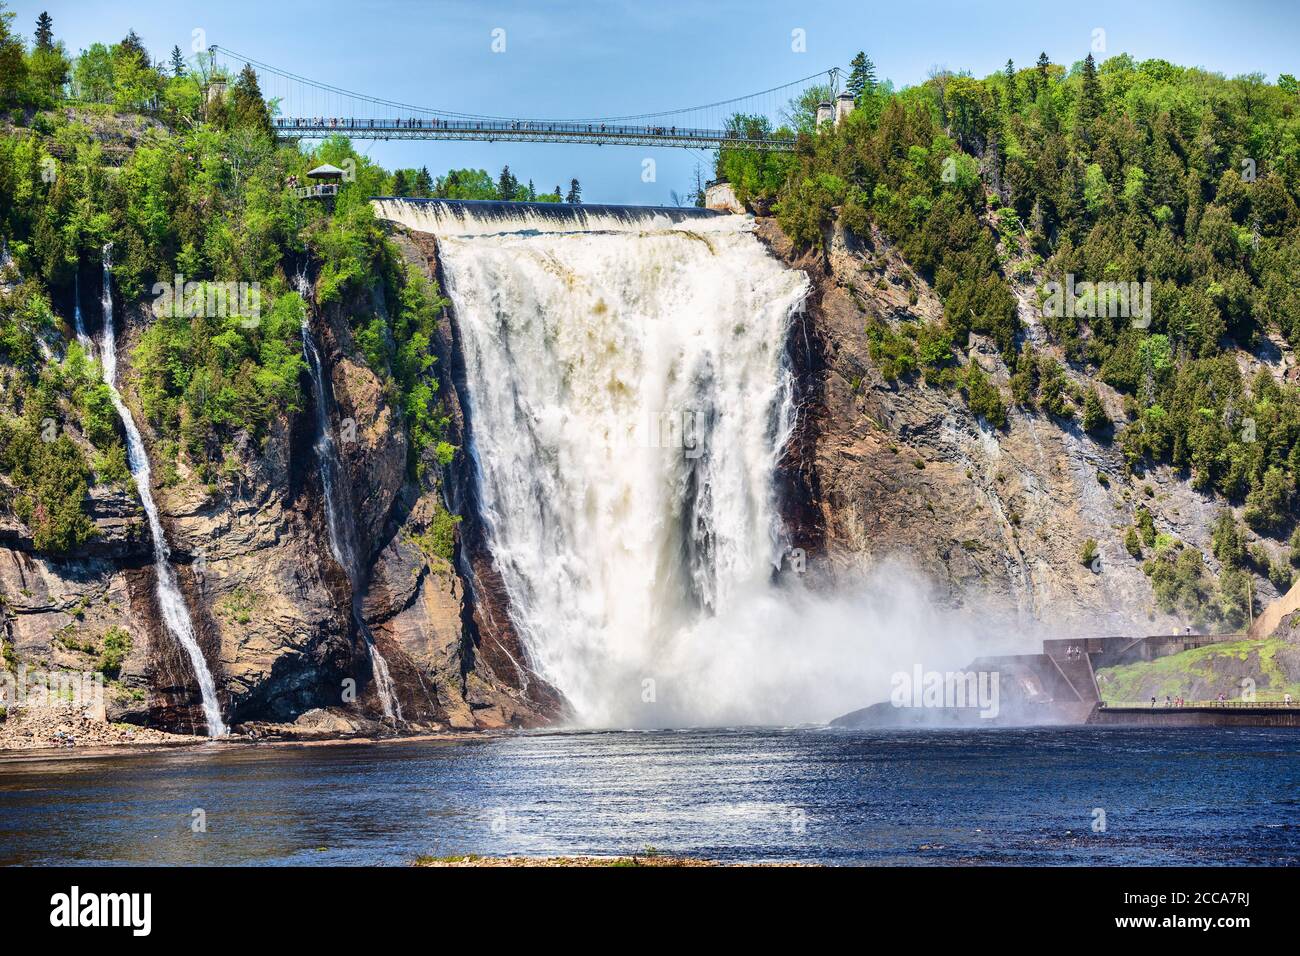 Montmorency Falls, großer Wasserfall in Quebec City, Kanada. Berühmtes beliebtes Touristenziel in Quebec, Touristenattraktion Stockfoto